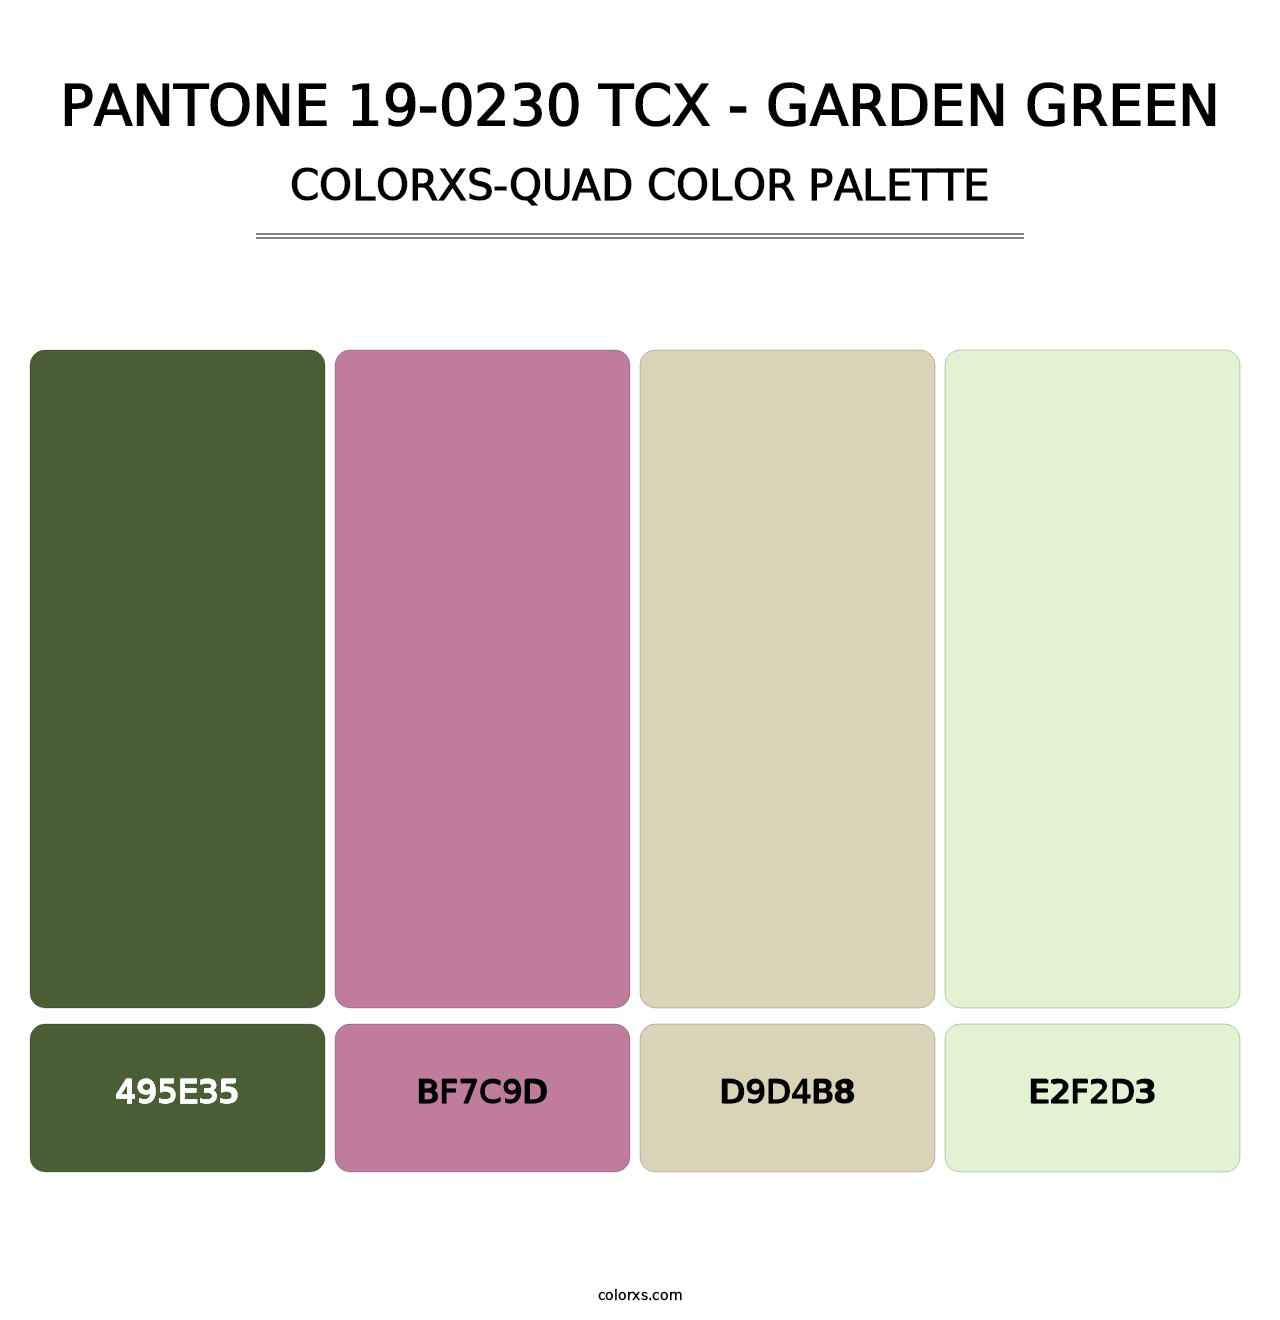 PANTONE 19-0230 TCX - Garden Green - Colorxs Quad Palette